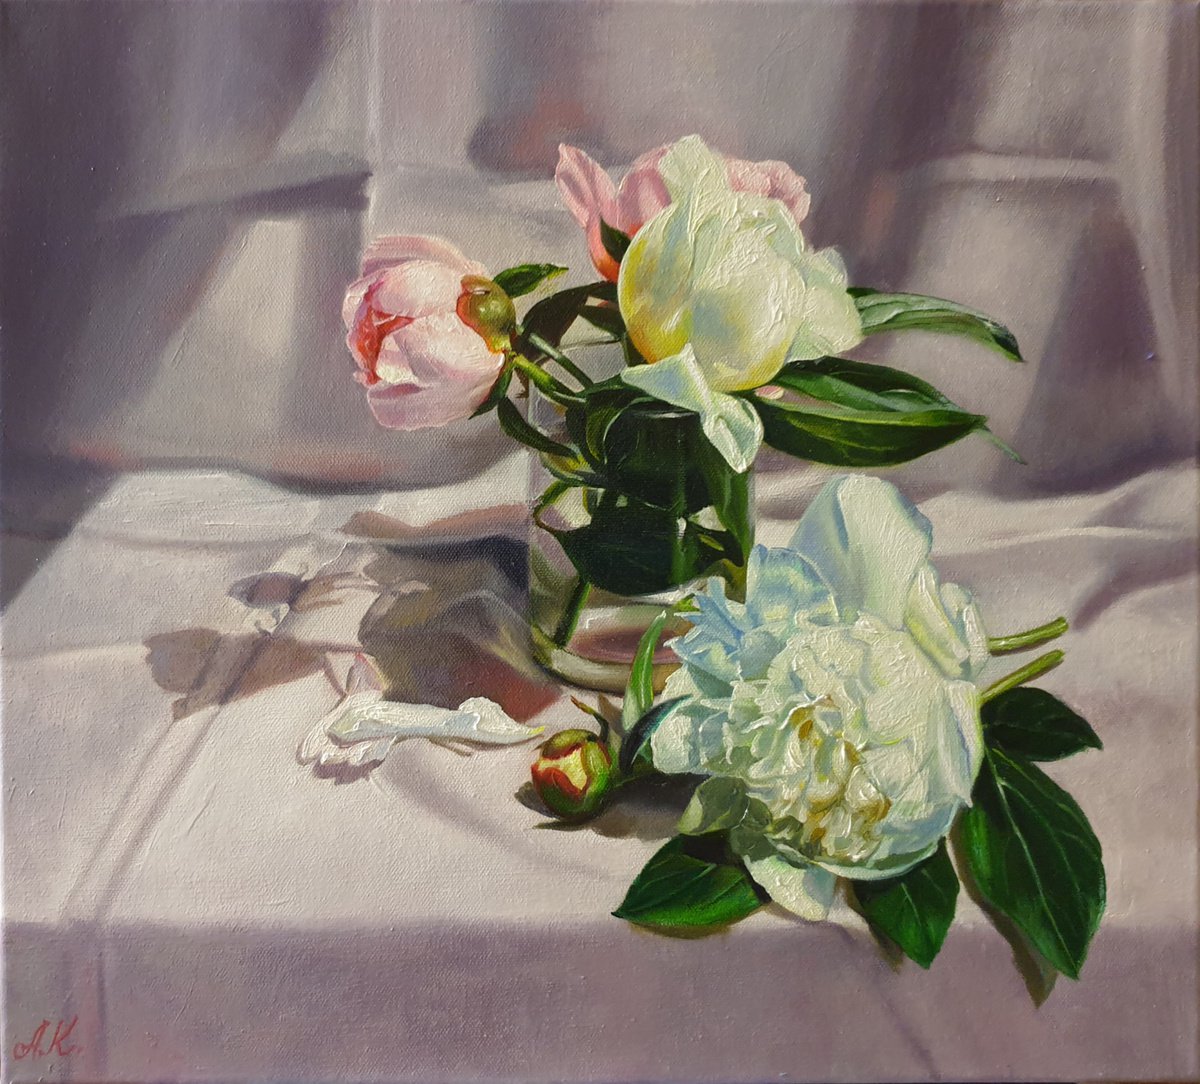 In gray-pink tones. peonies flower 2021 by Anna Kotelnik